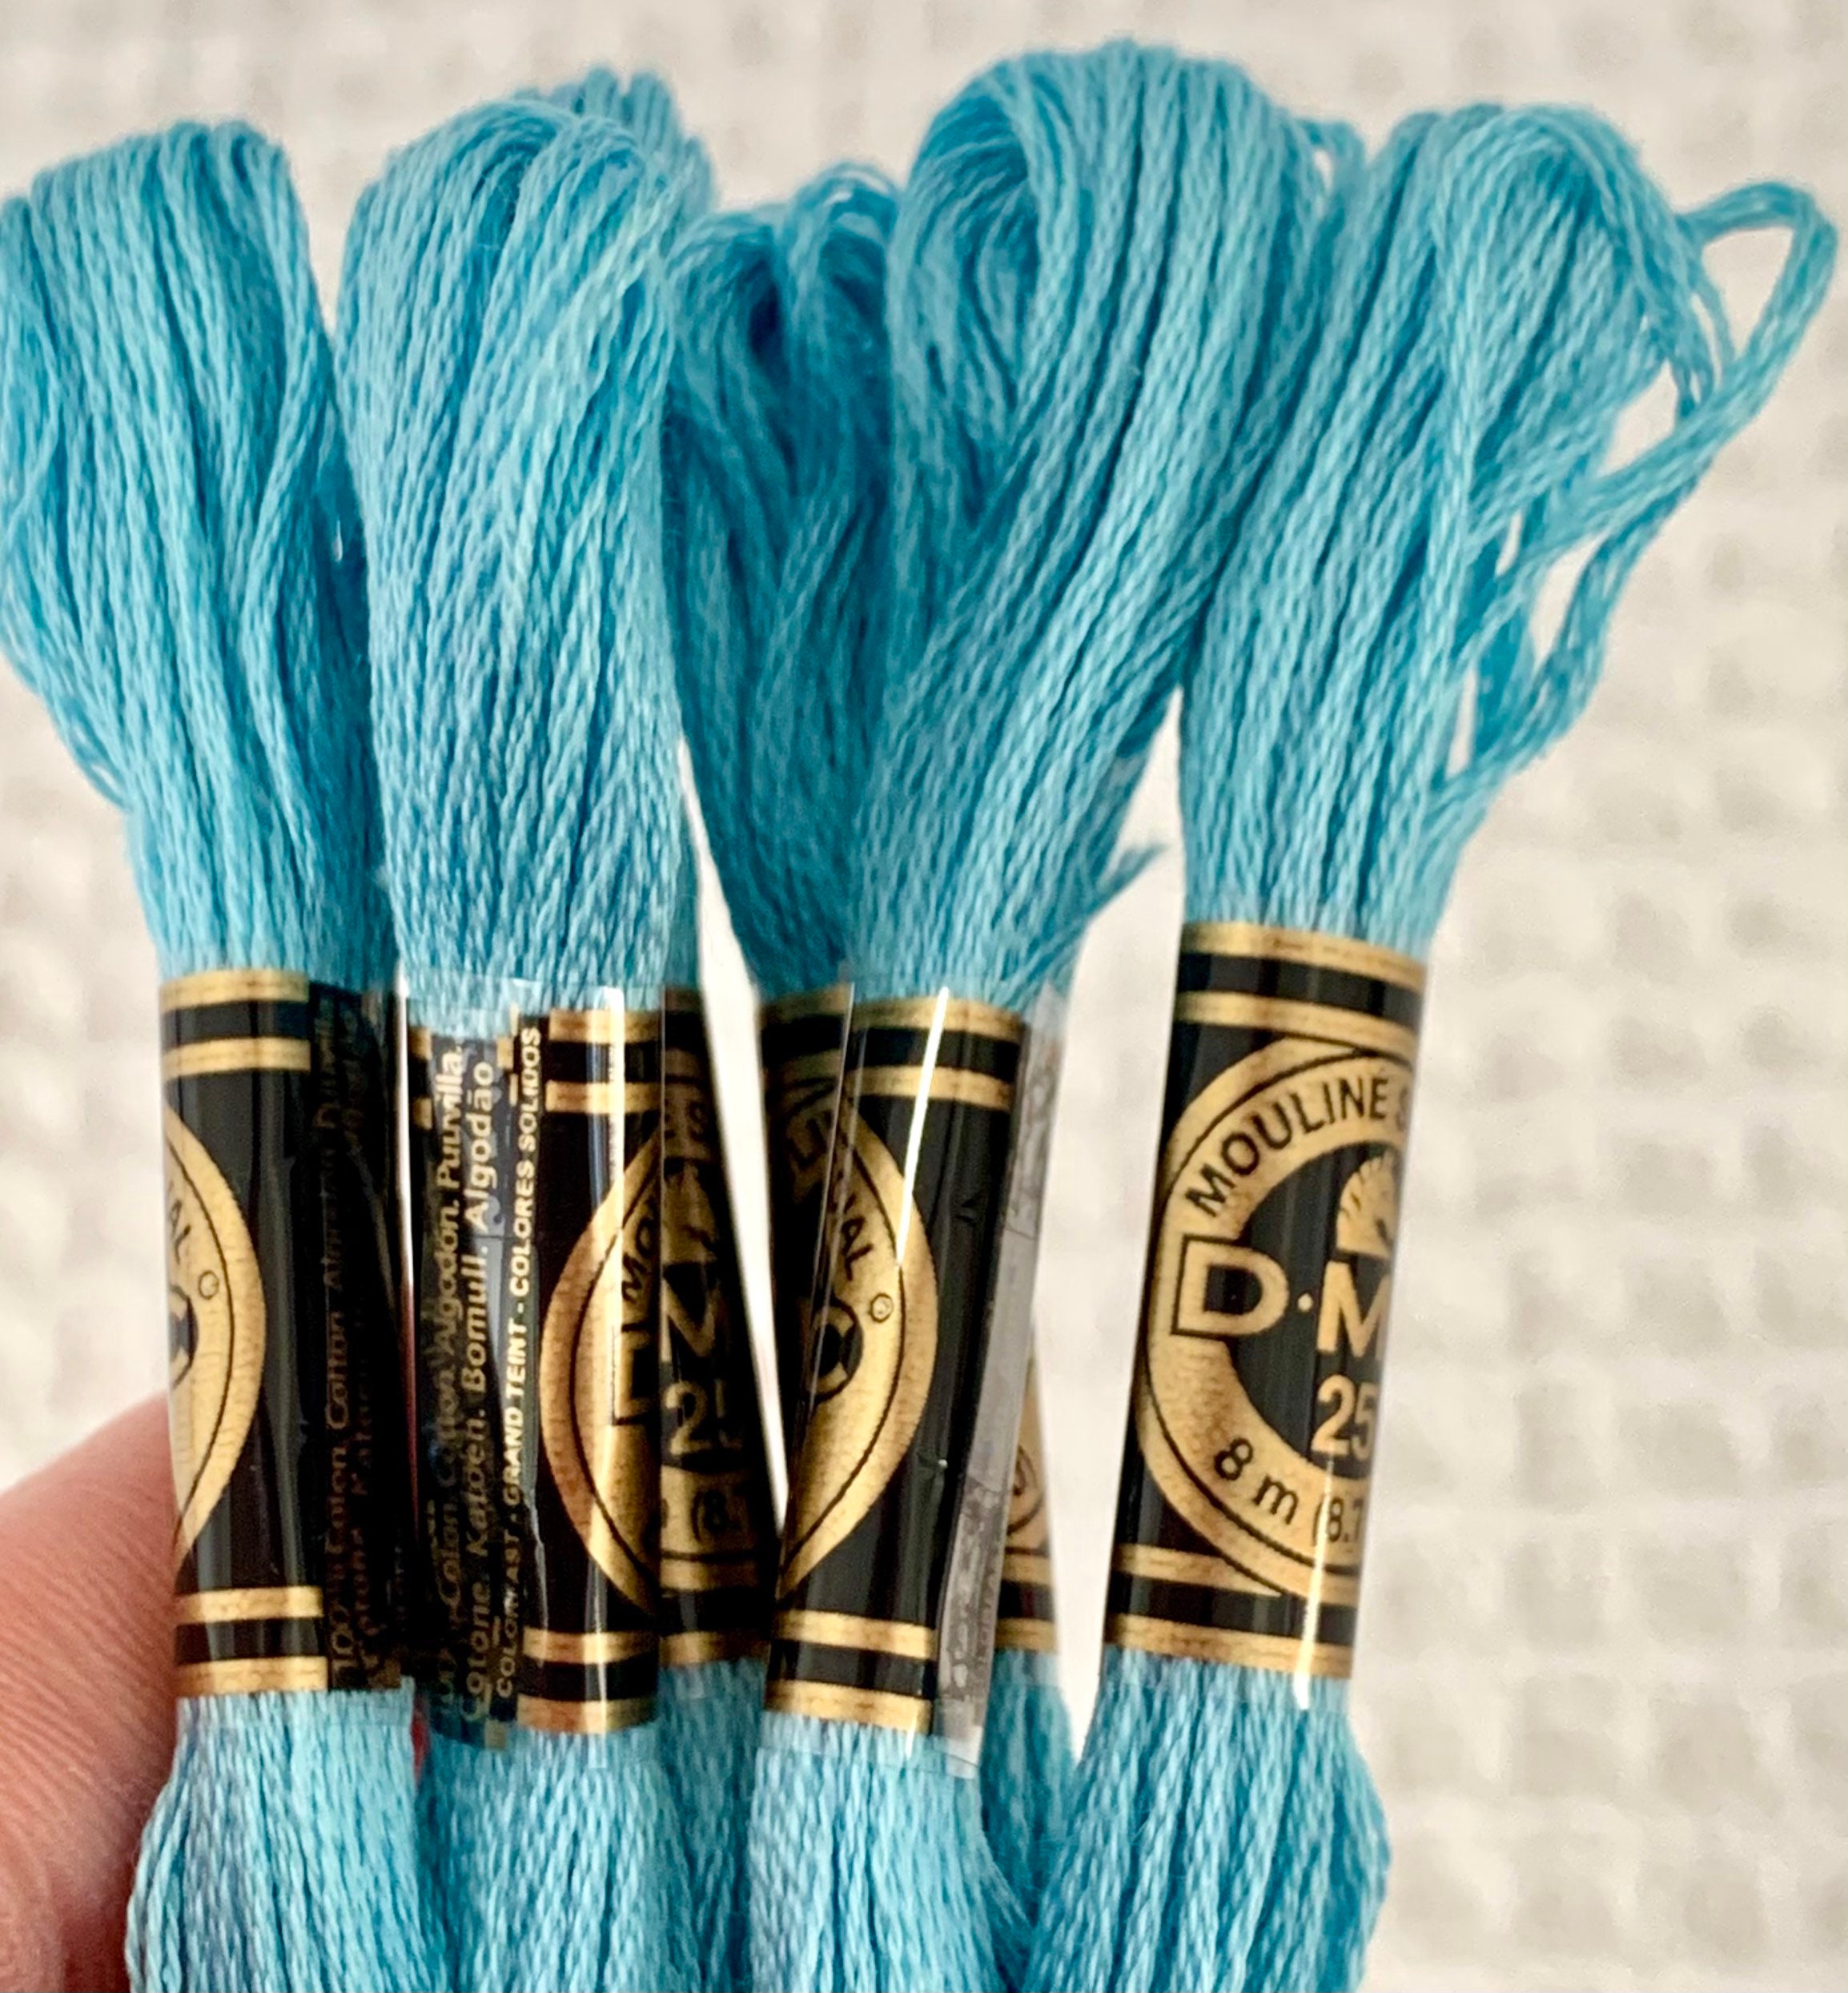 Blue DMC Embroidery Stranded Cotton Floss DMC 3766 & DMC 3846